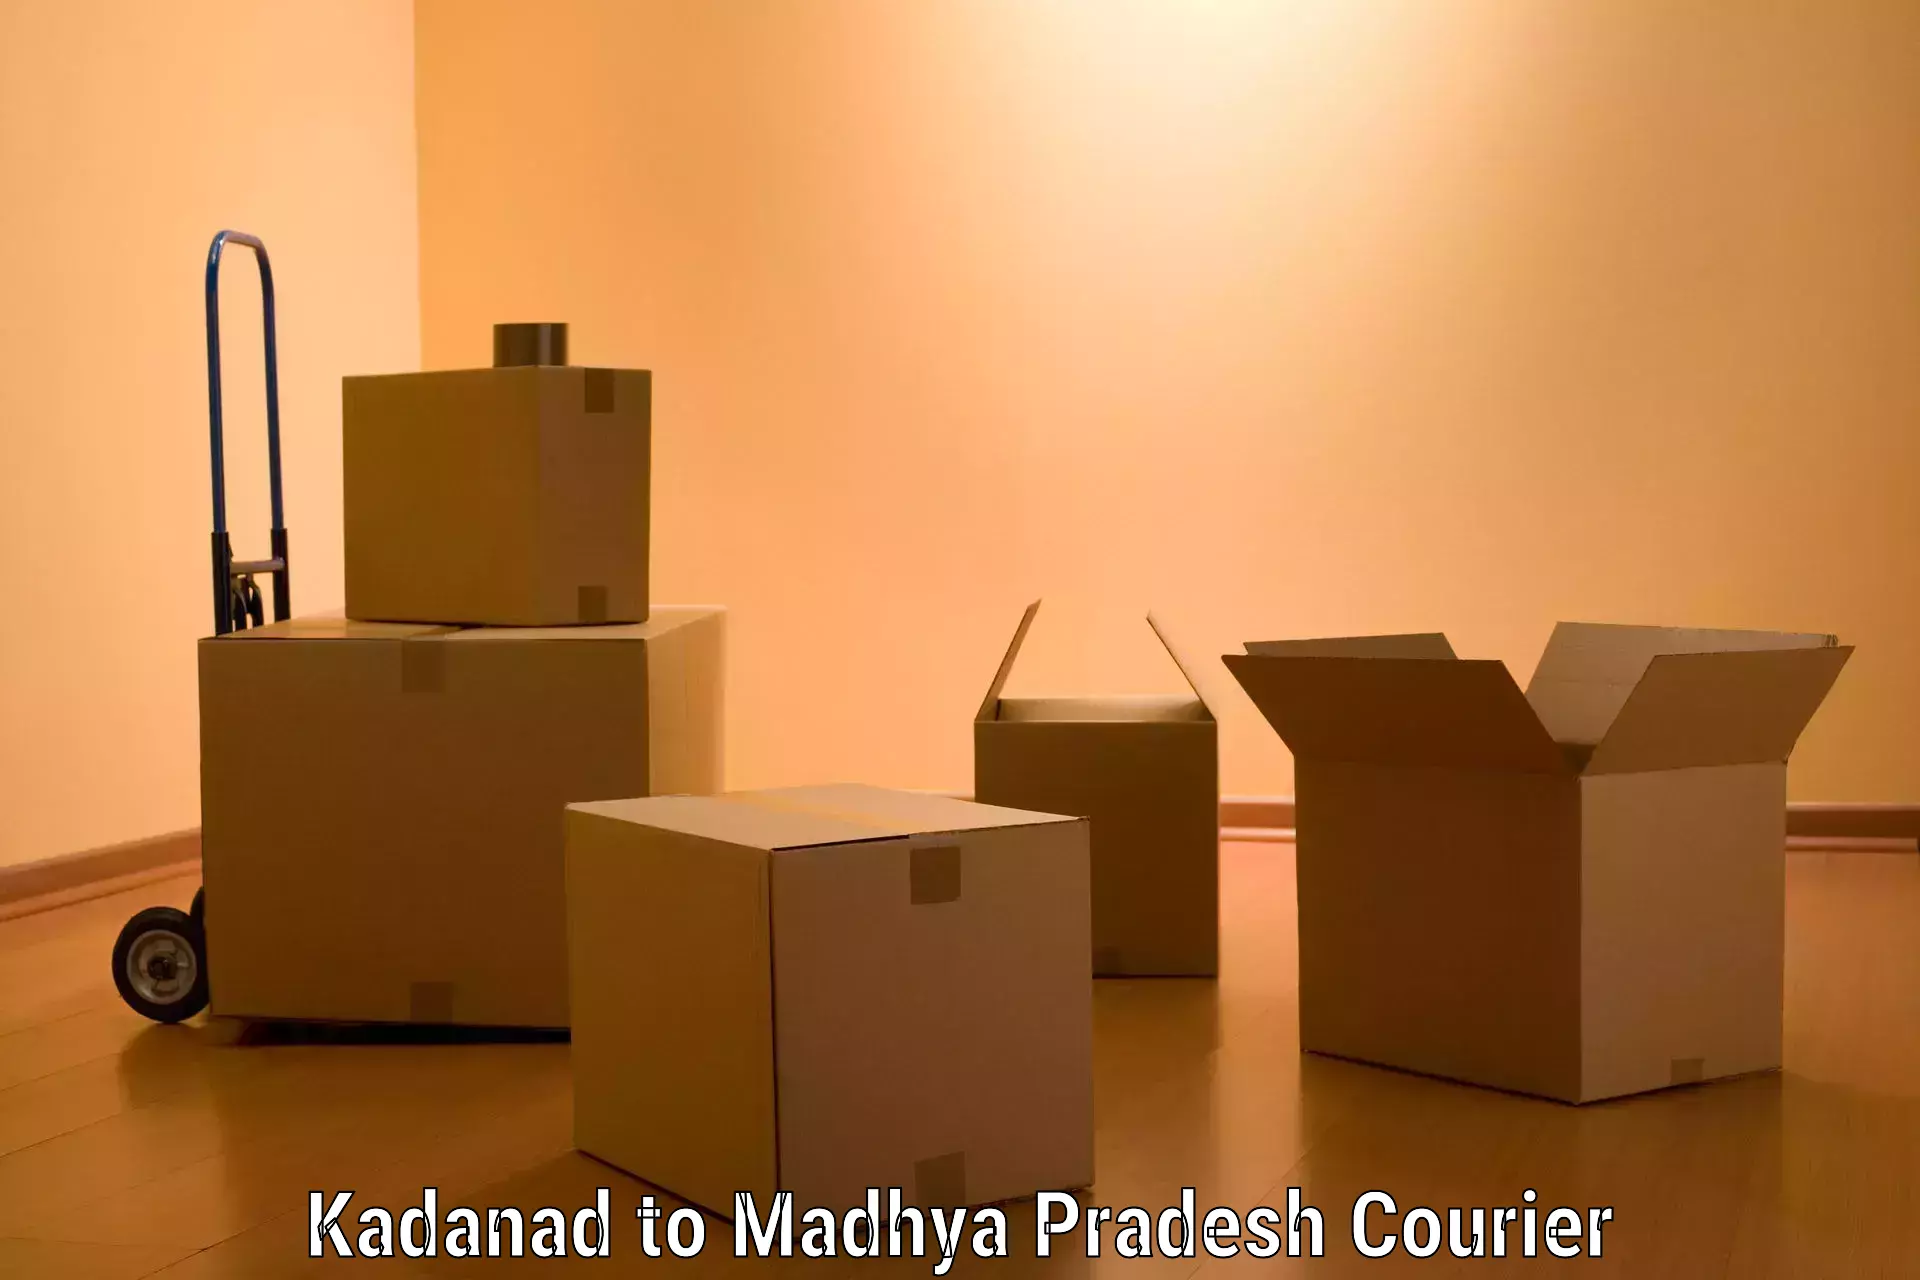 Furniture moving experts Kadanad to Petlawad